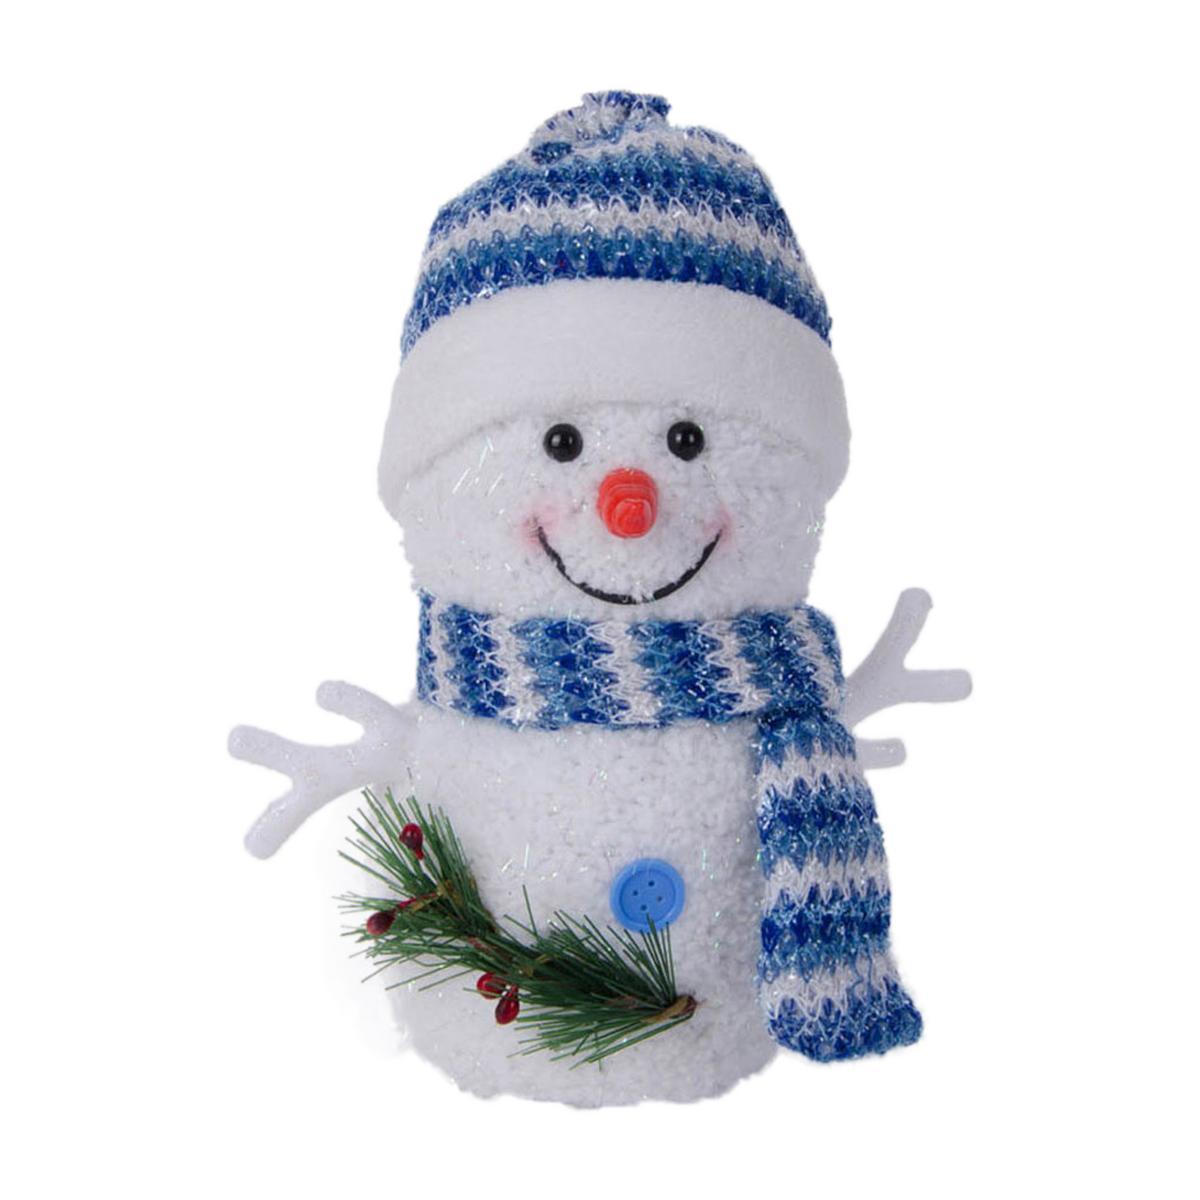 Bonhomme de neige LED - Plastique et tissu - 14 x 12 x H 20 cm - Bleu et blanc